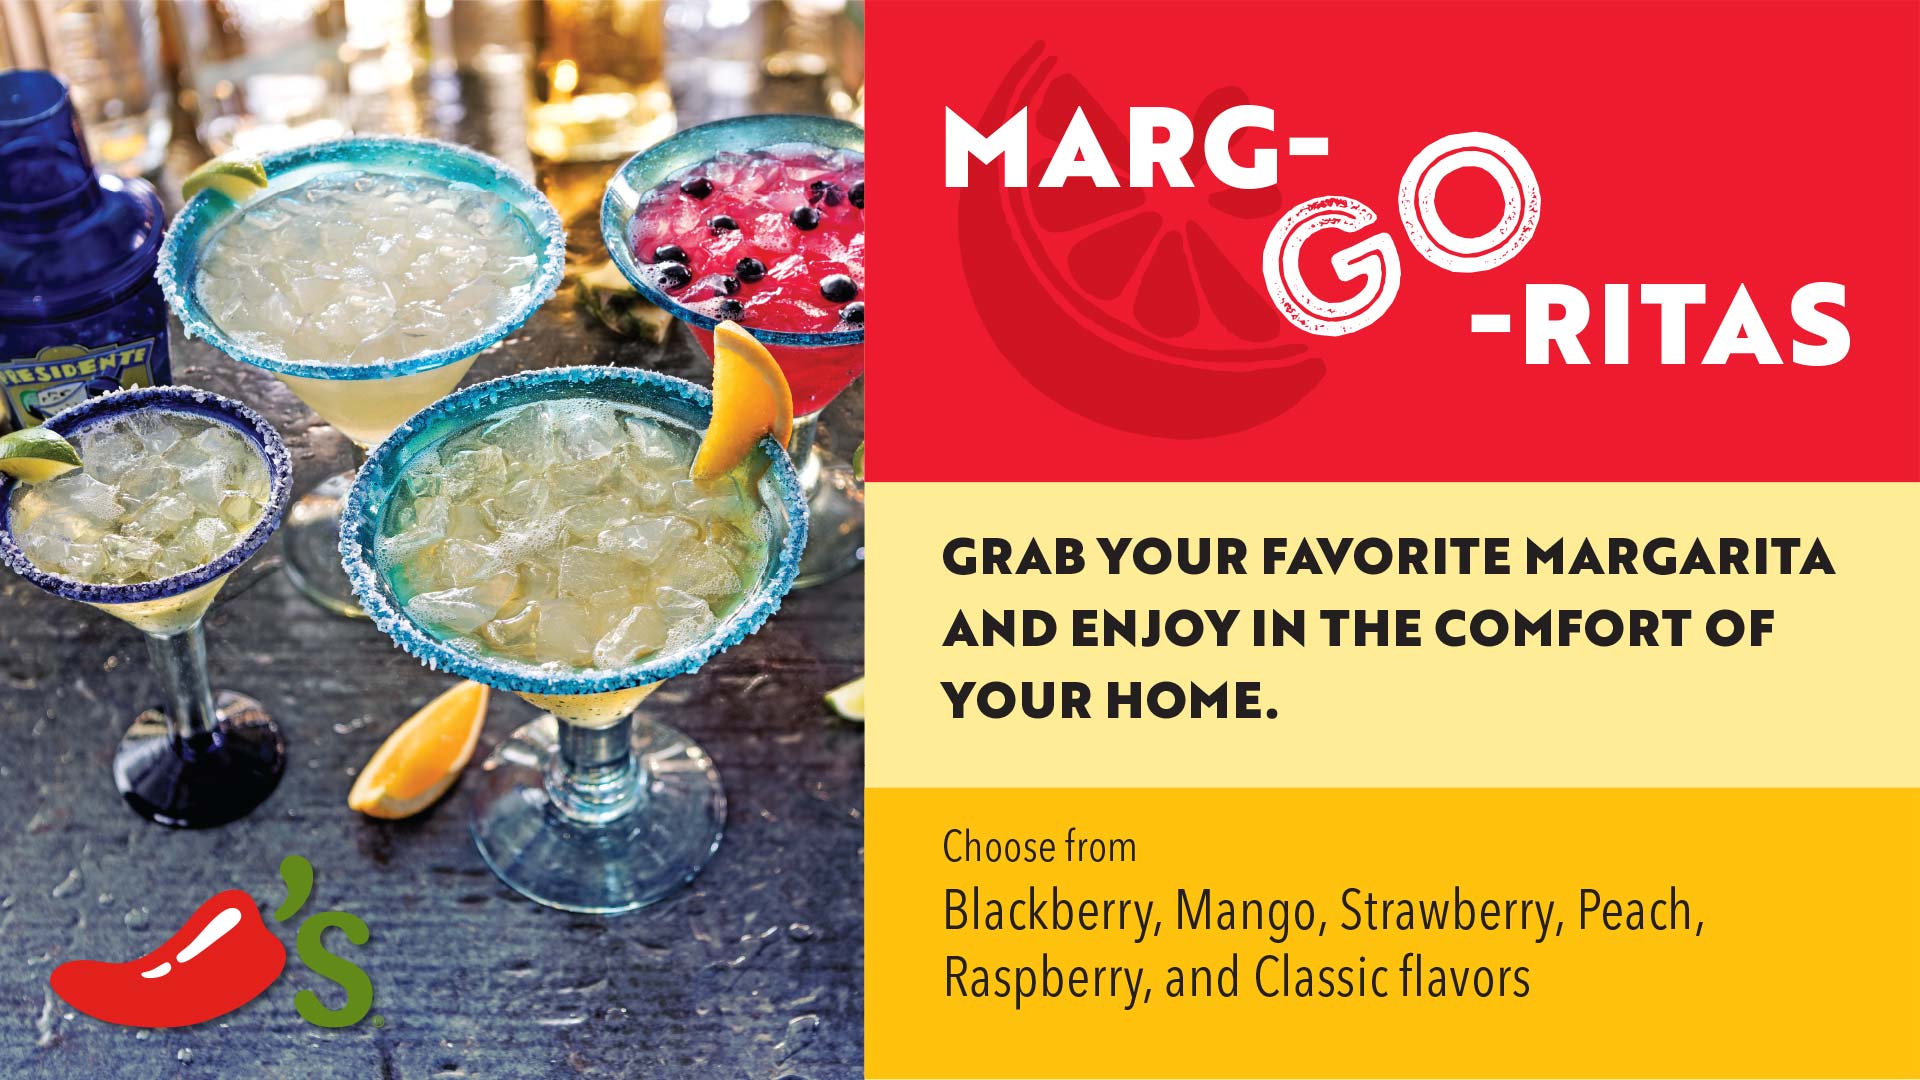 Slide_Chilis_Marg-Go-Ritas-Classic-Margaritas-2020